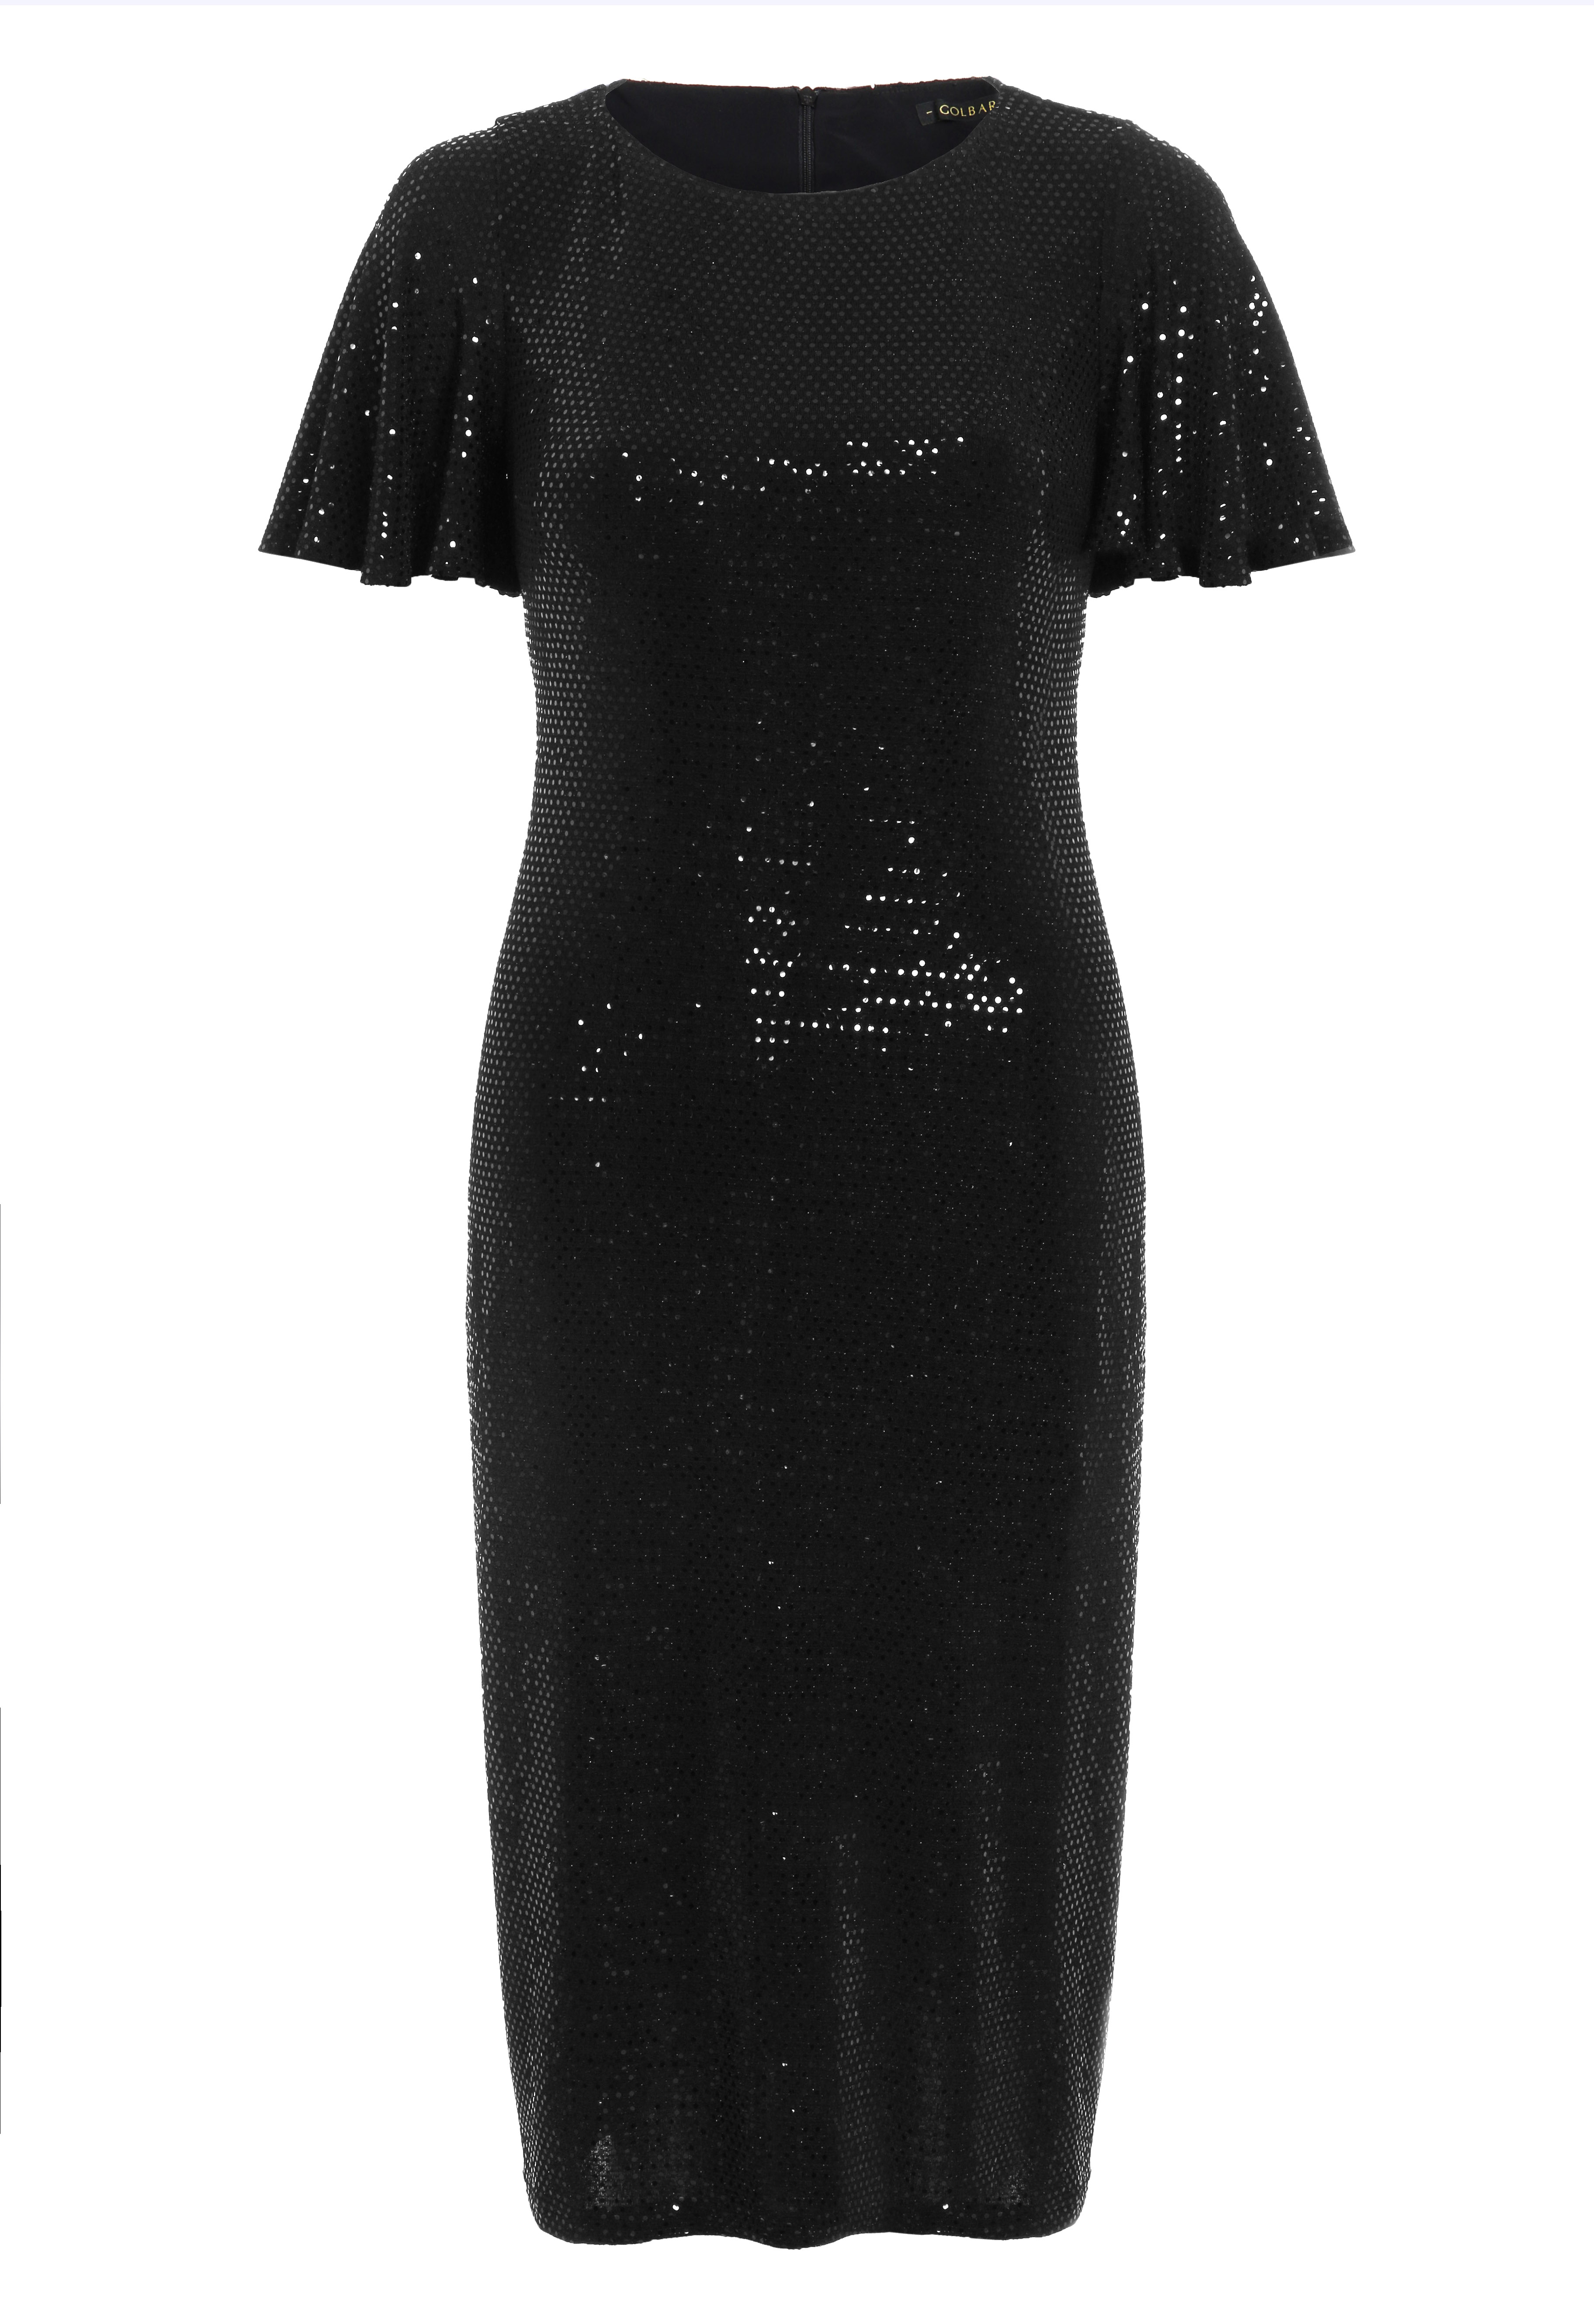 שמלה מבית גולברי במחיר 399.90 שקל (צילום: טל טרי) (צילום: טל טרי)